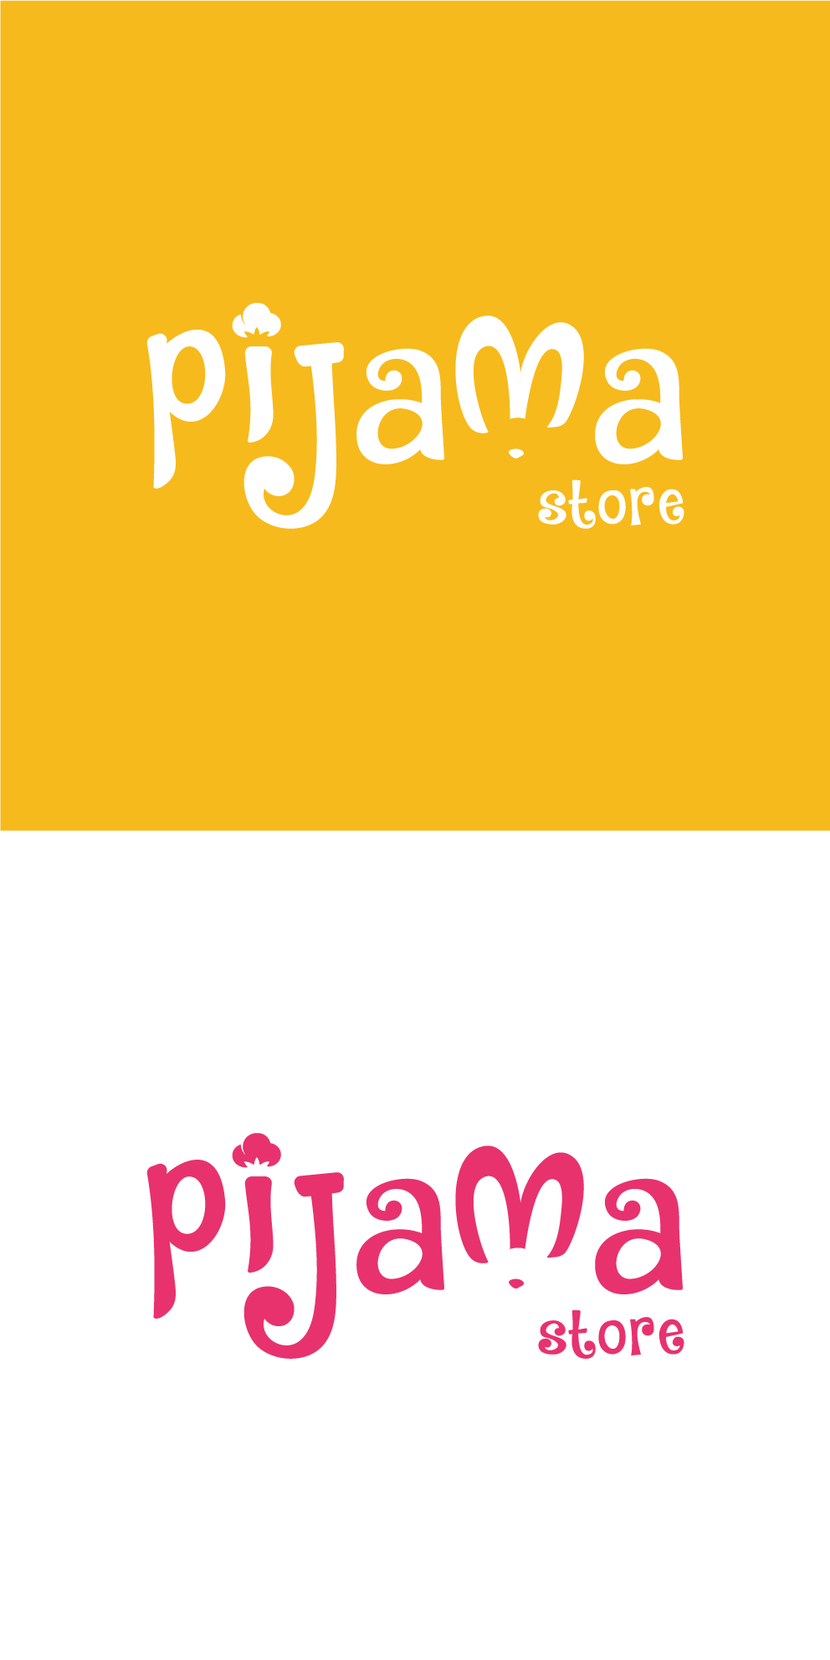 Зайка) - Логотип для интернет магазина по продаже домашней одежды (пижамы)